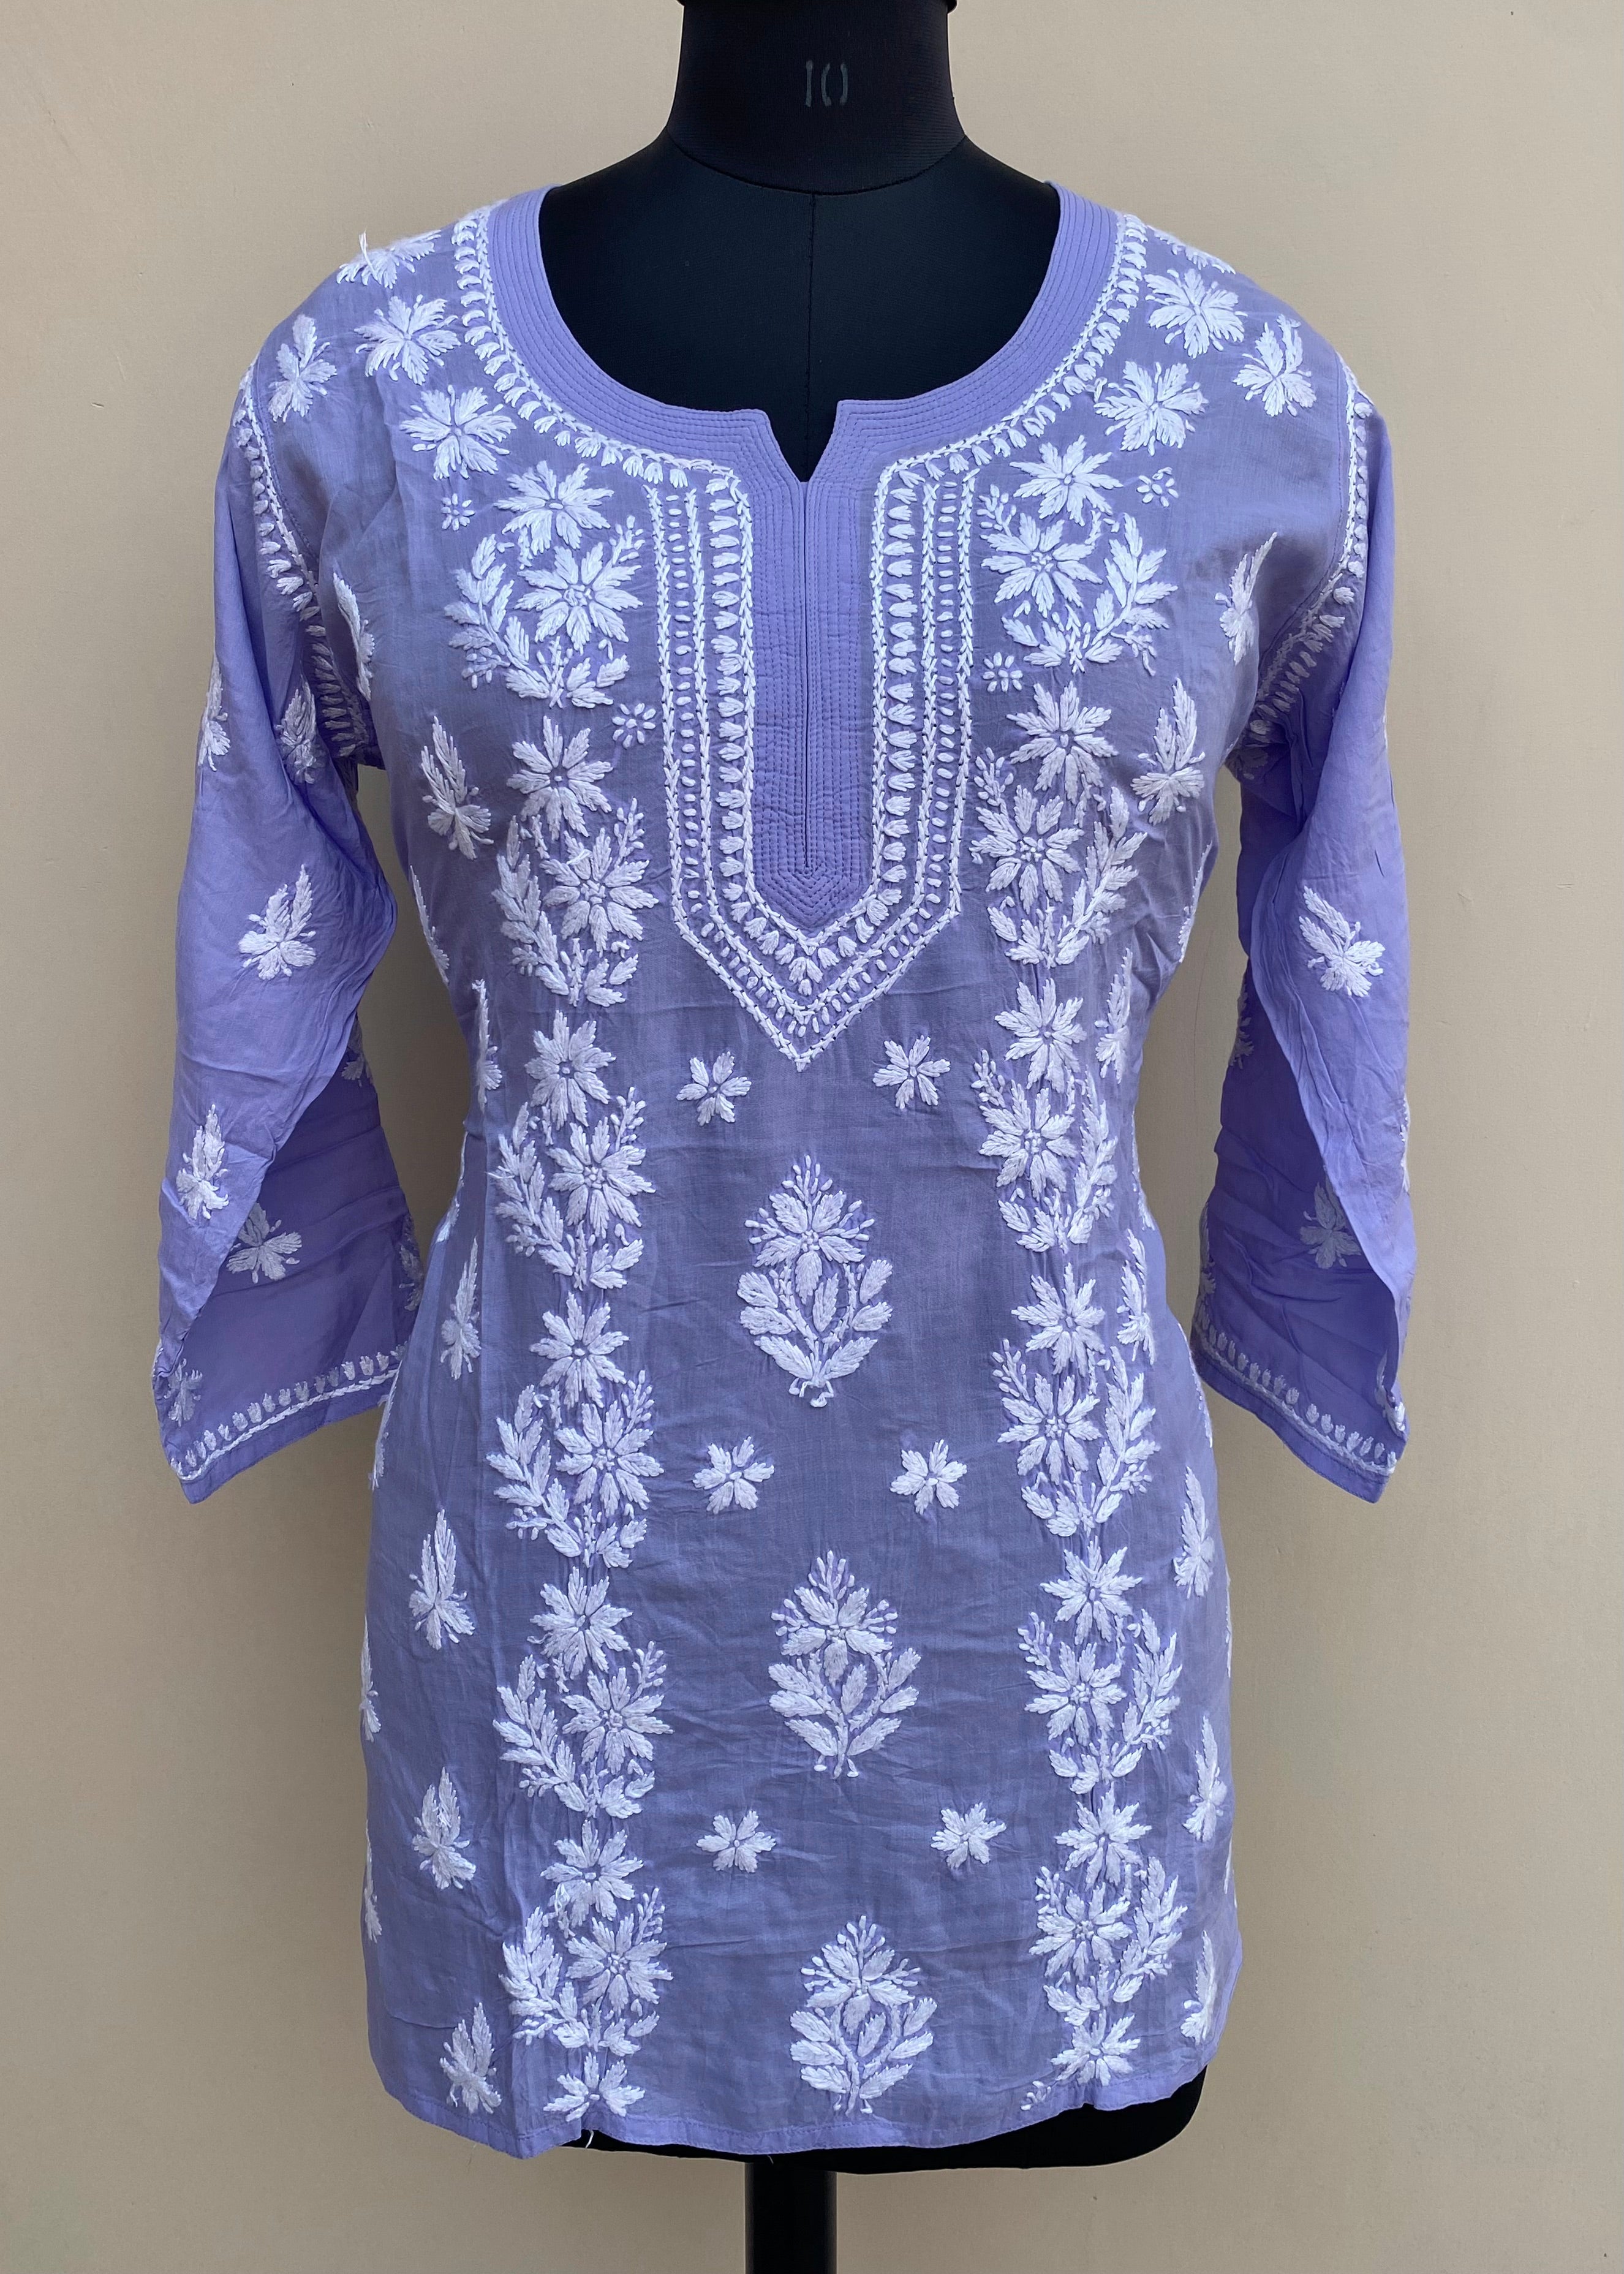 Gray Georgette Short Top Tunic Lucknow Chikankari Kurta Kurti Handmade  Shirt | eBay